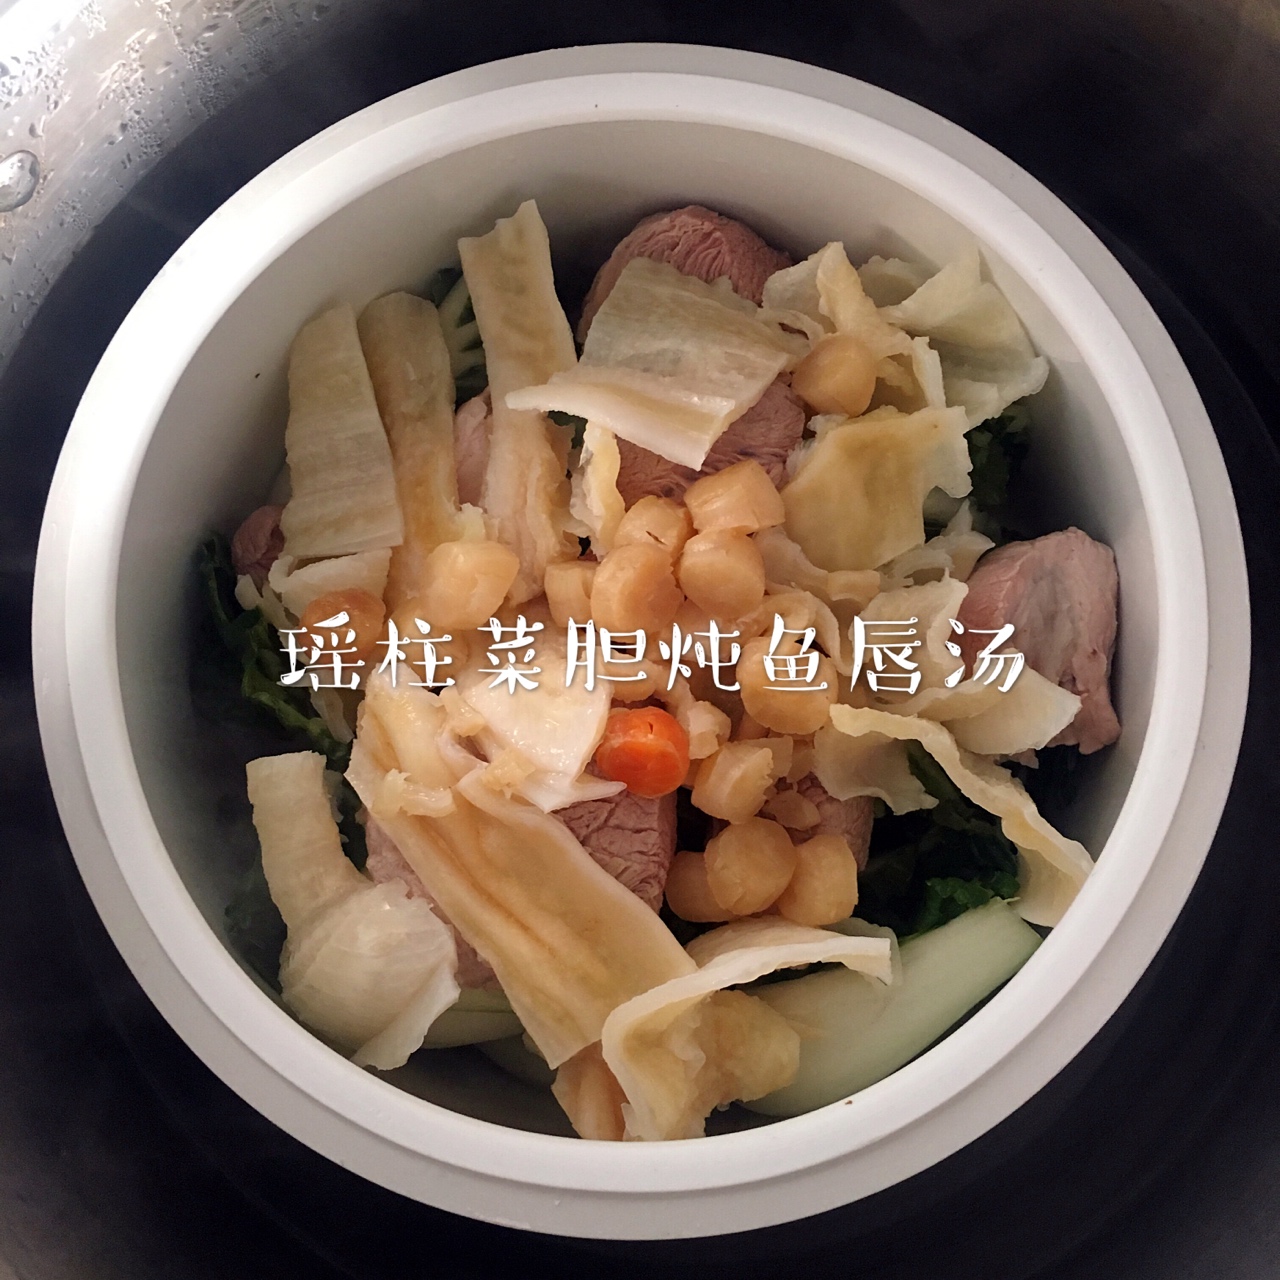 瑶柱菜胆炖鱼唇汤